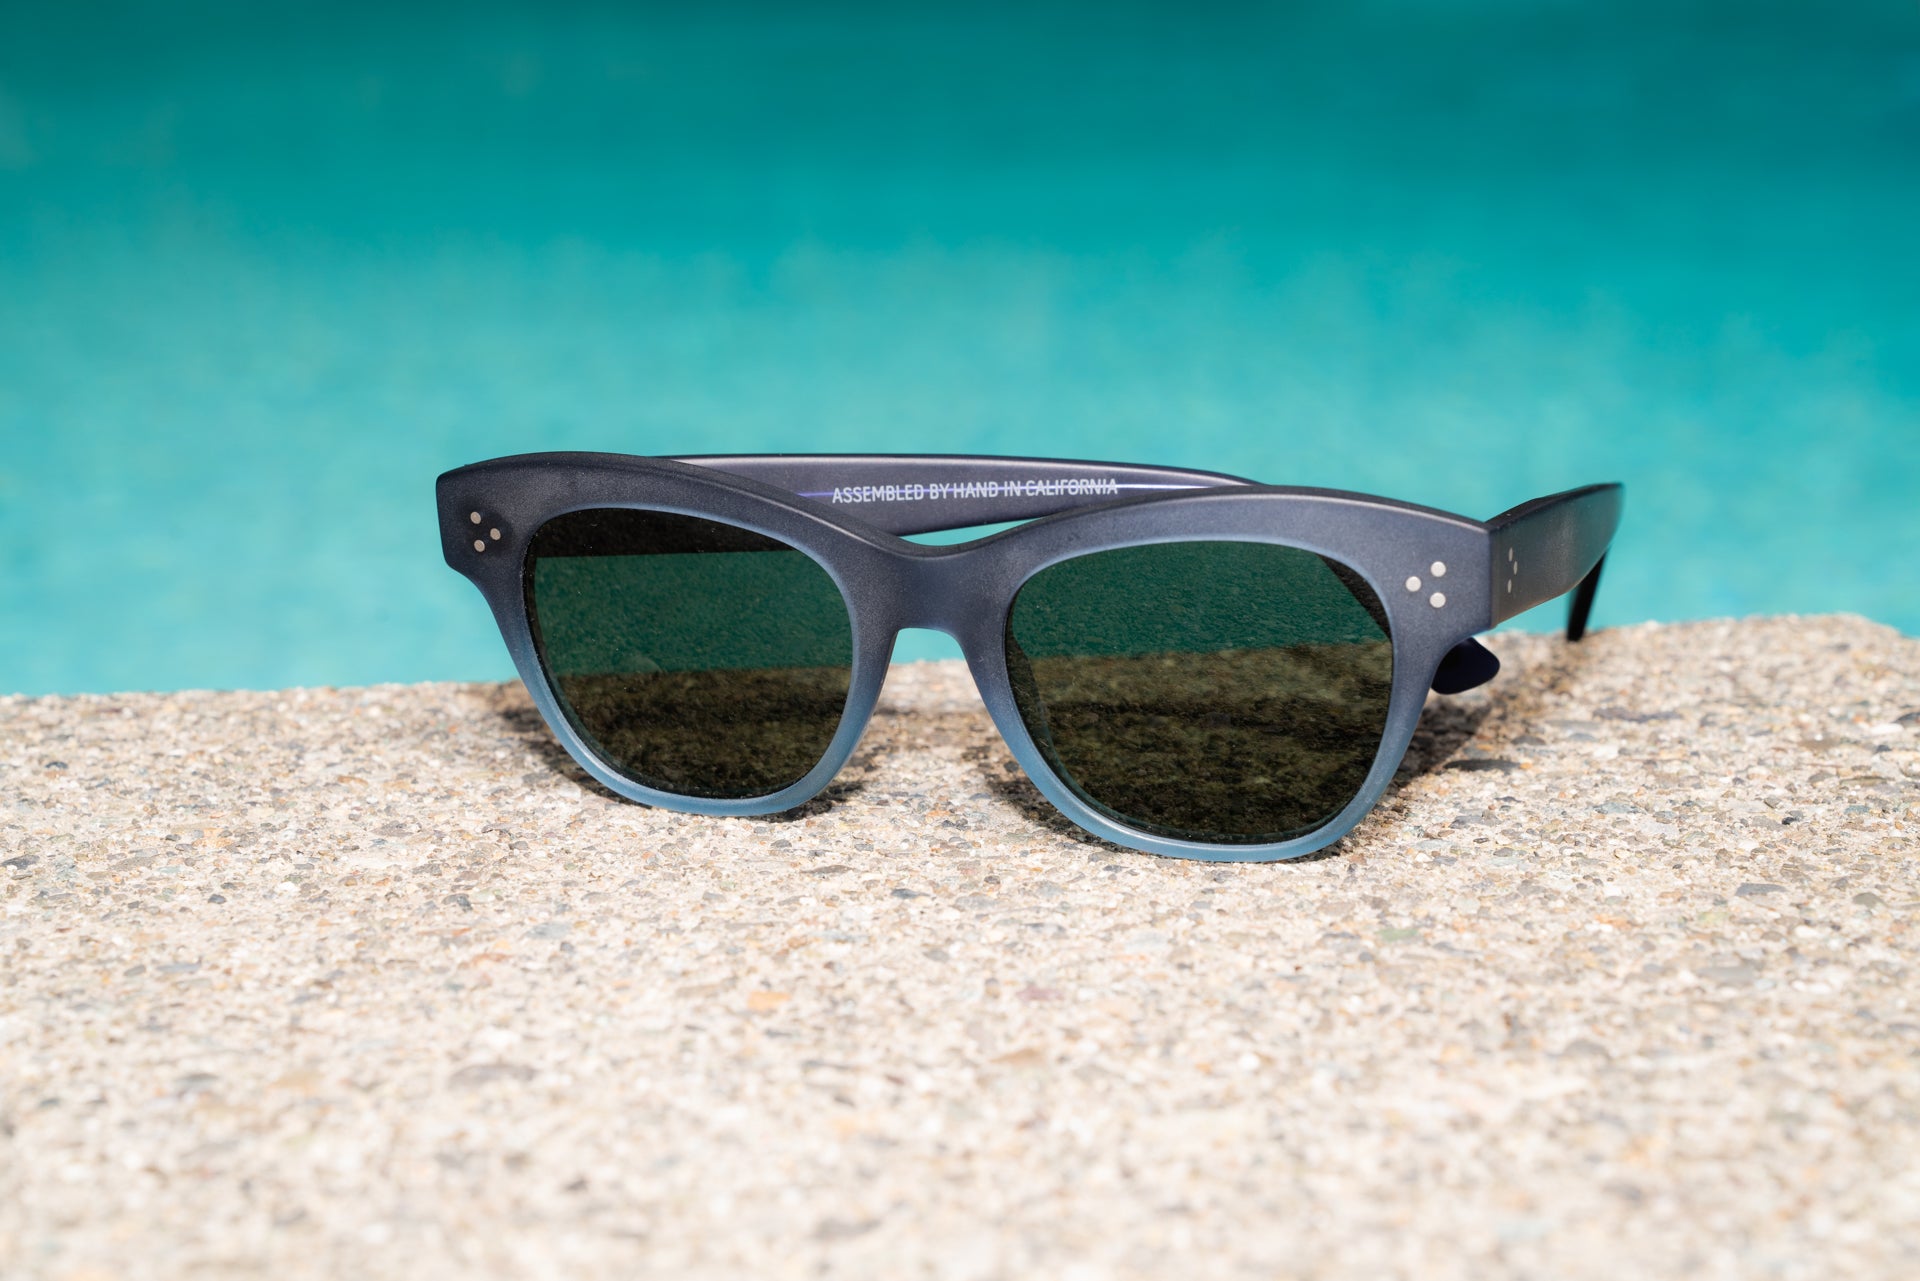 L&F Single Vision Rx Sunglasses